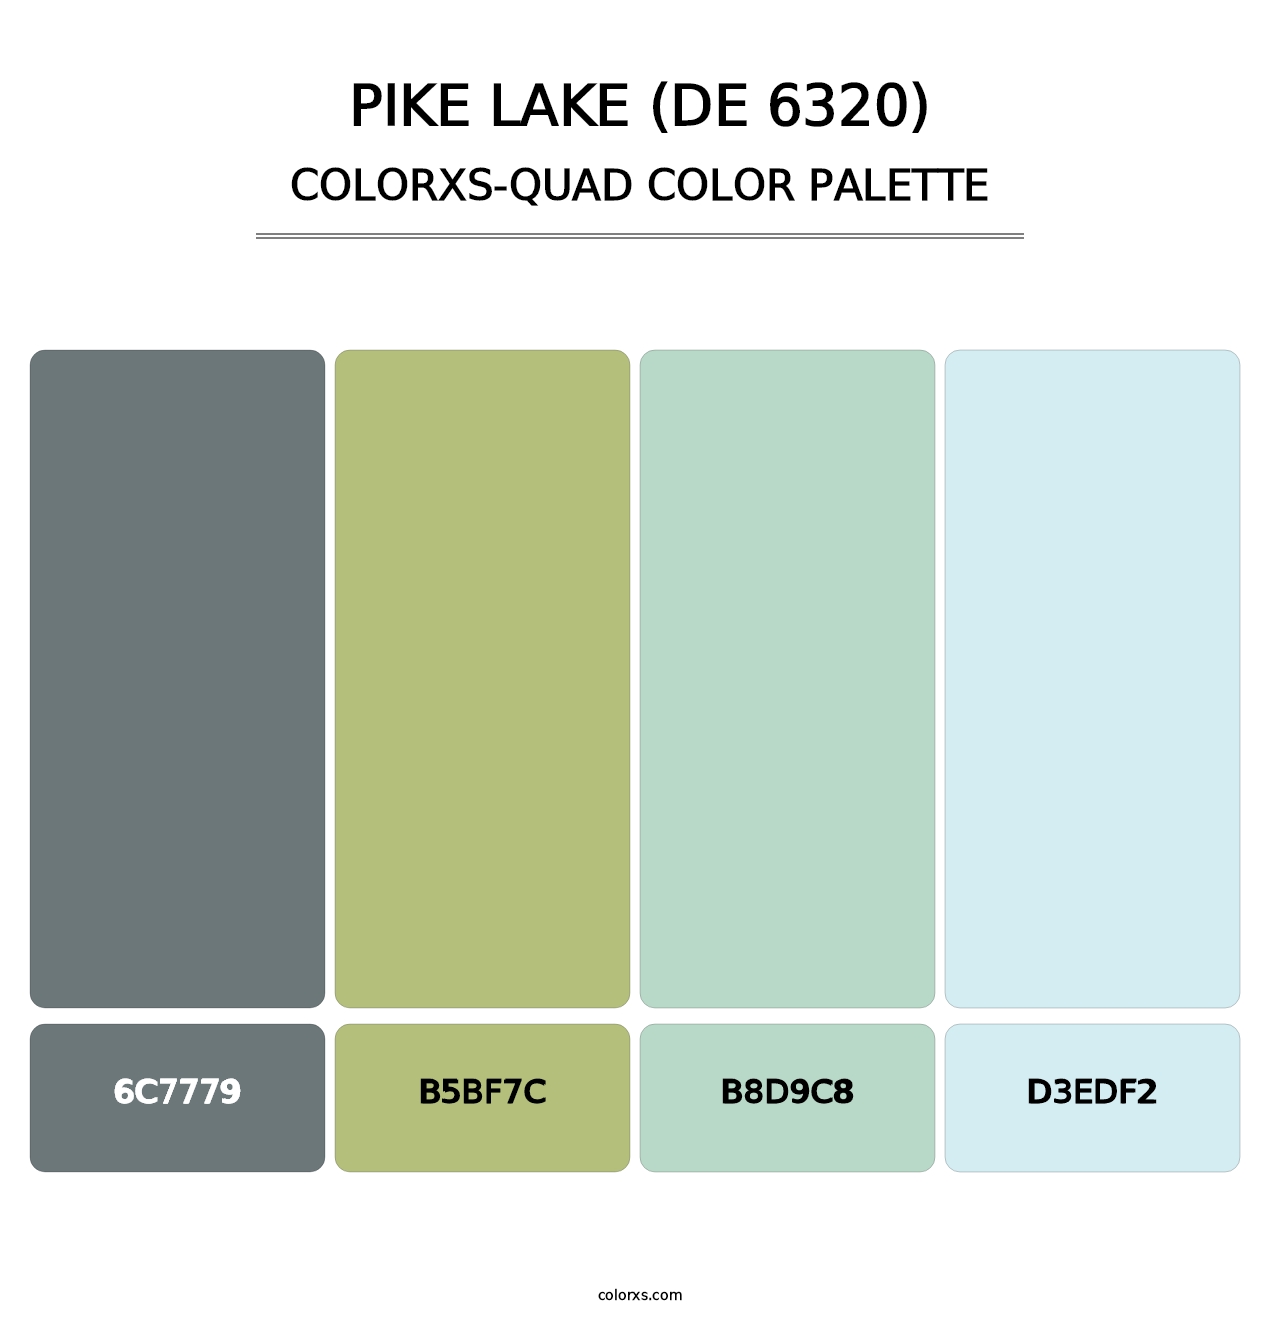 Pike Lake (DE 6320) - Colorxs Quad Palette